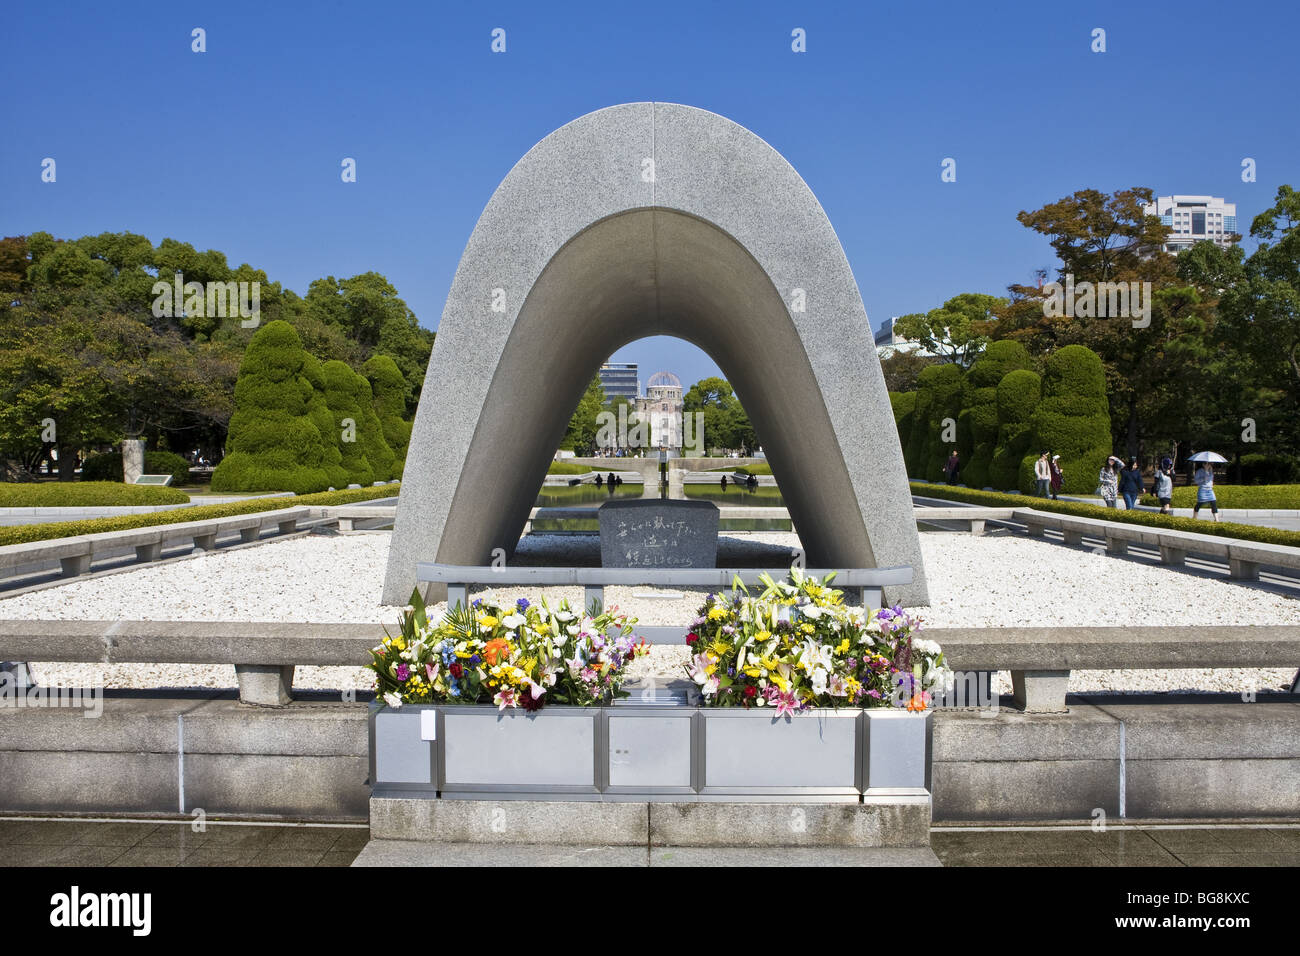 (1952) du cénotaphe érigé en l'honneur des victimes des bombes atomiques larguées sur Hiroshima et Nagasaki. Hiroshima. Le Japon. Banque D'Images